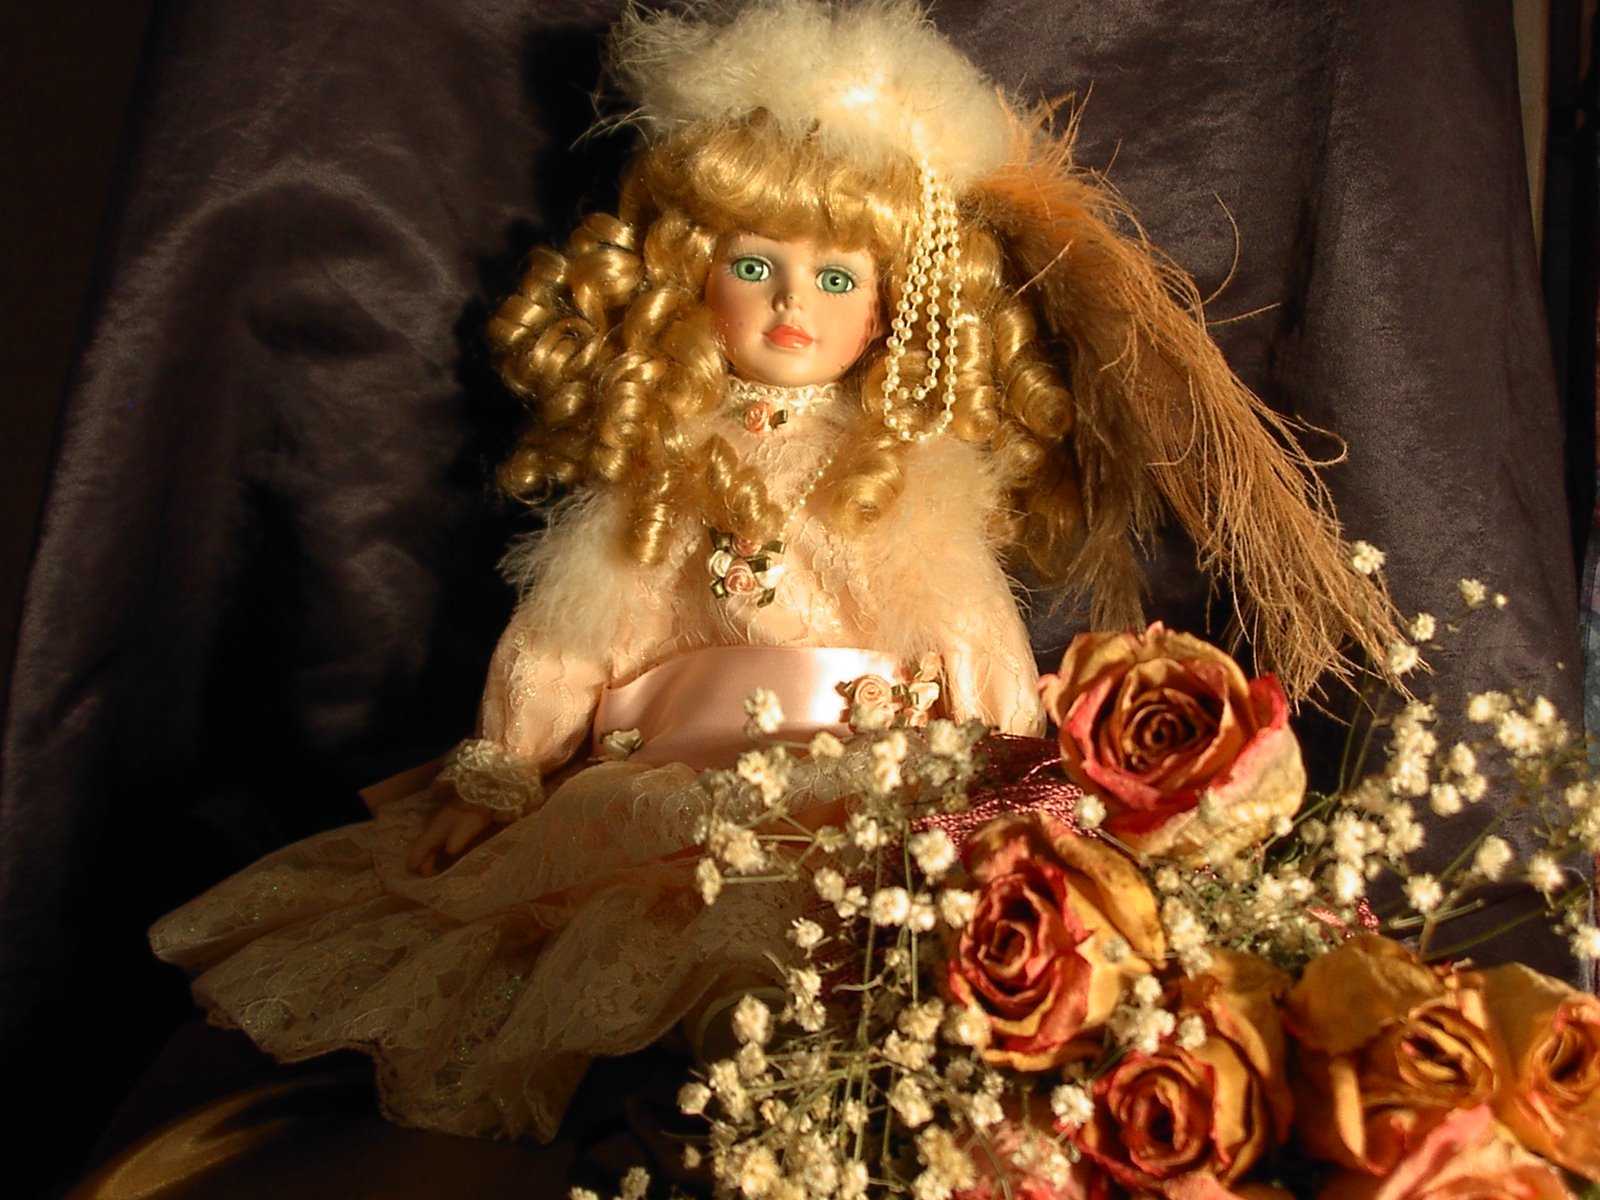 a close up of a doll next to a flower arrangement